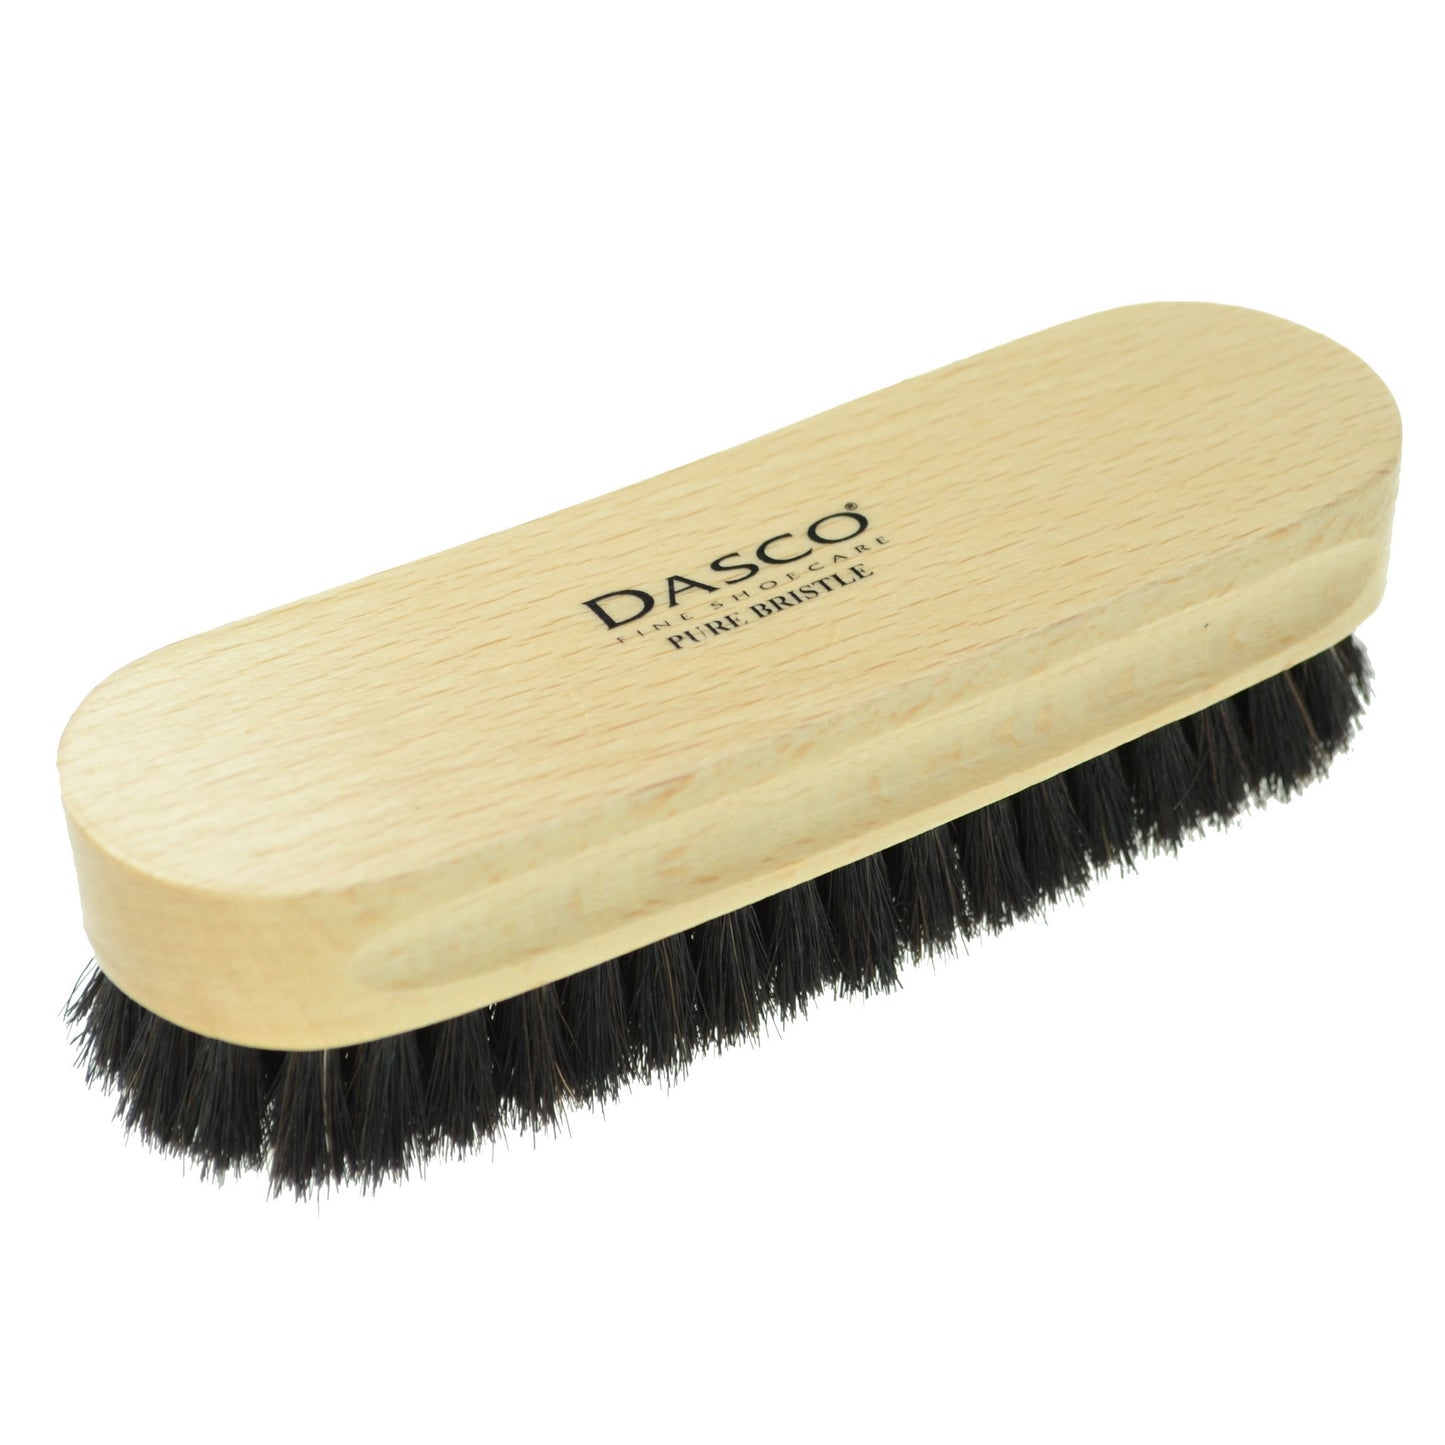 Dasco Small Bristle Brush - Black